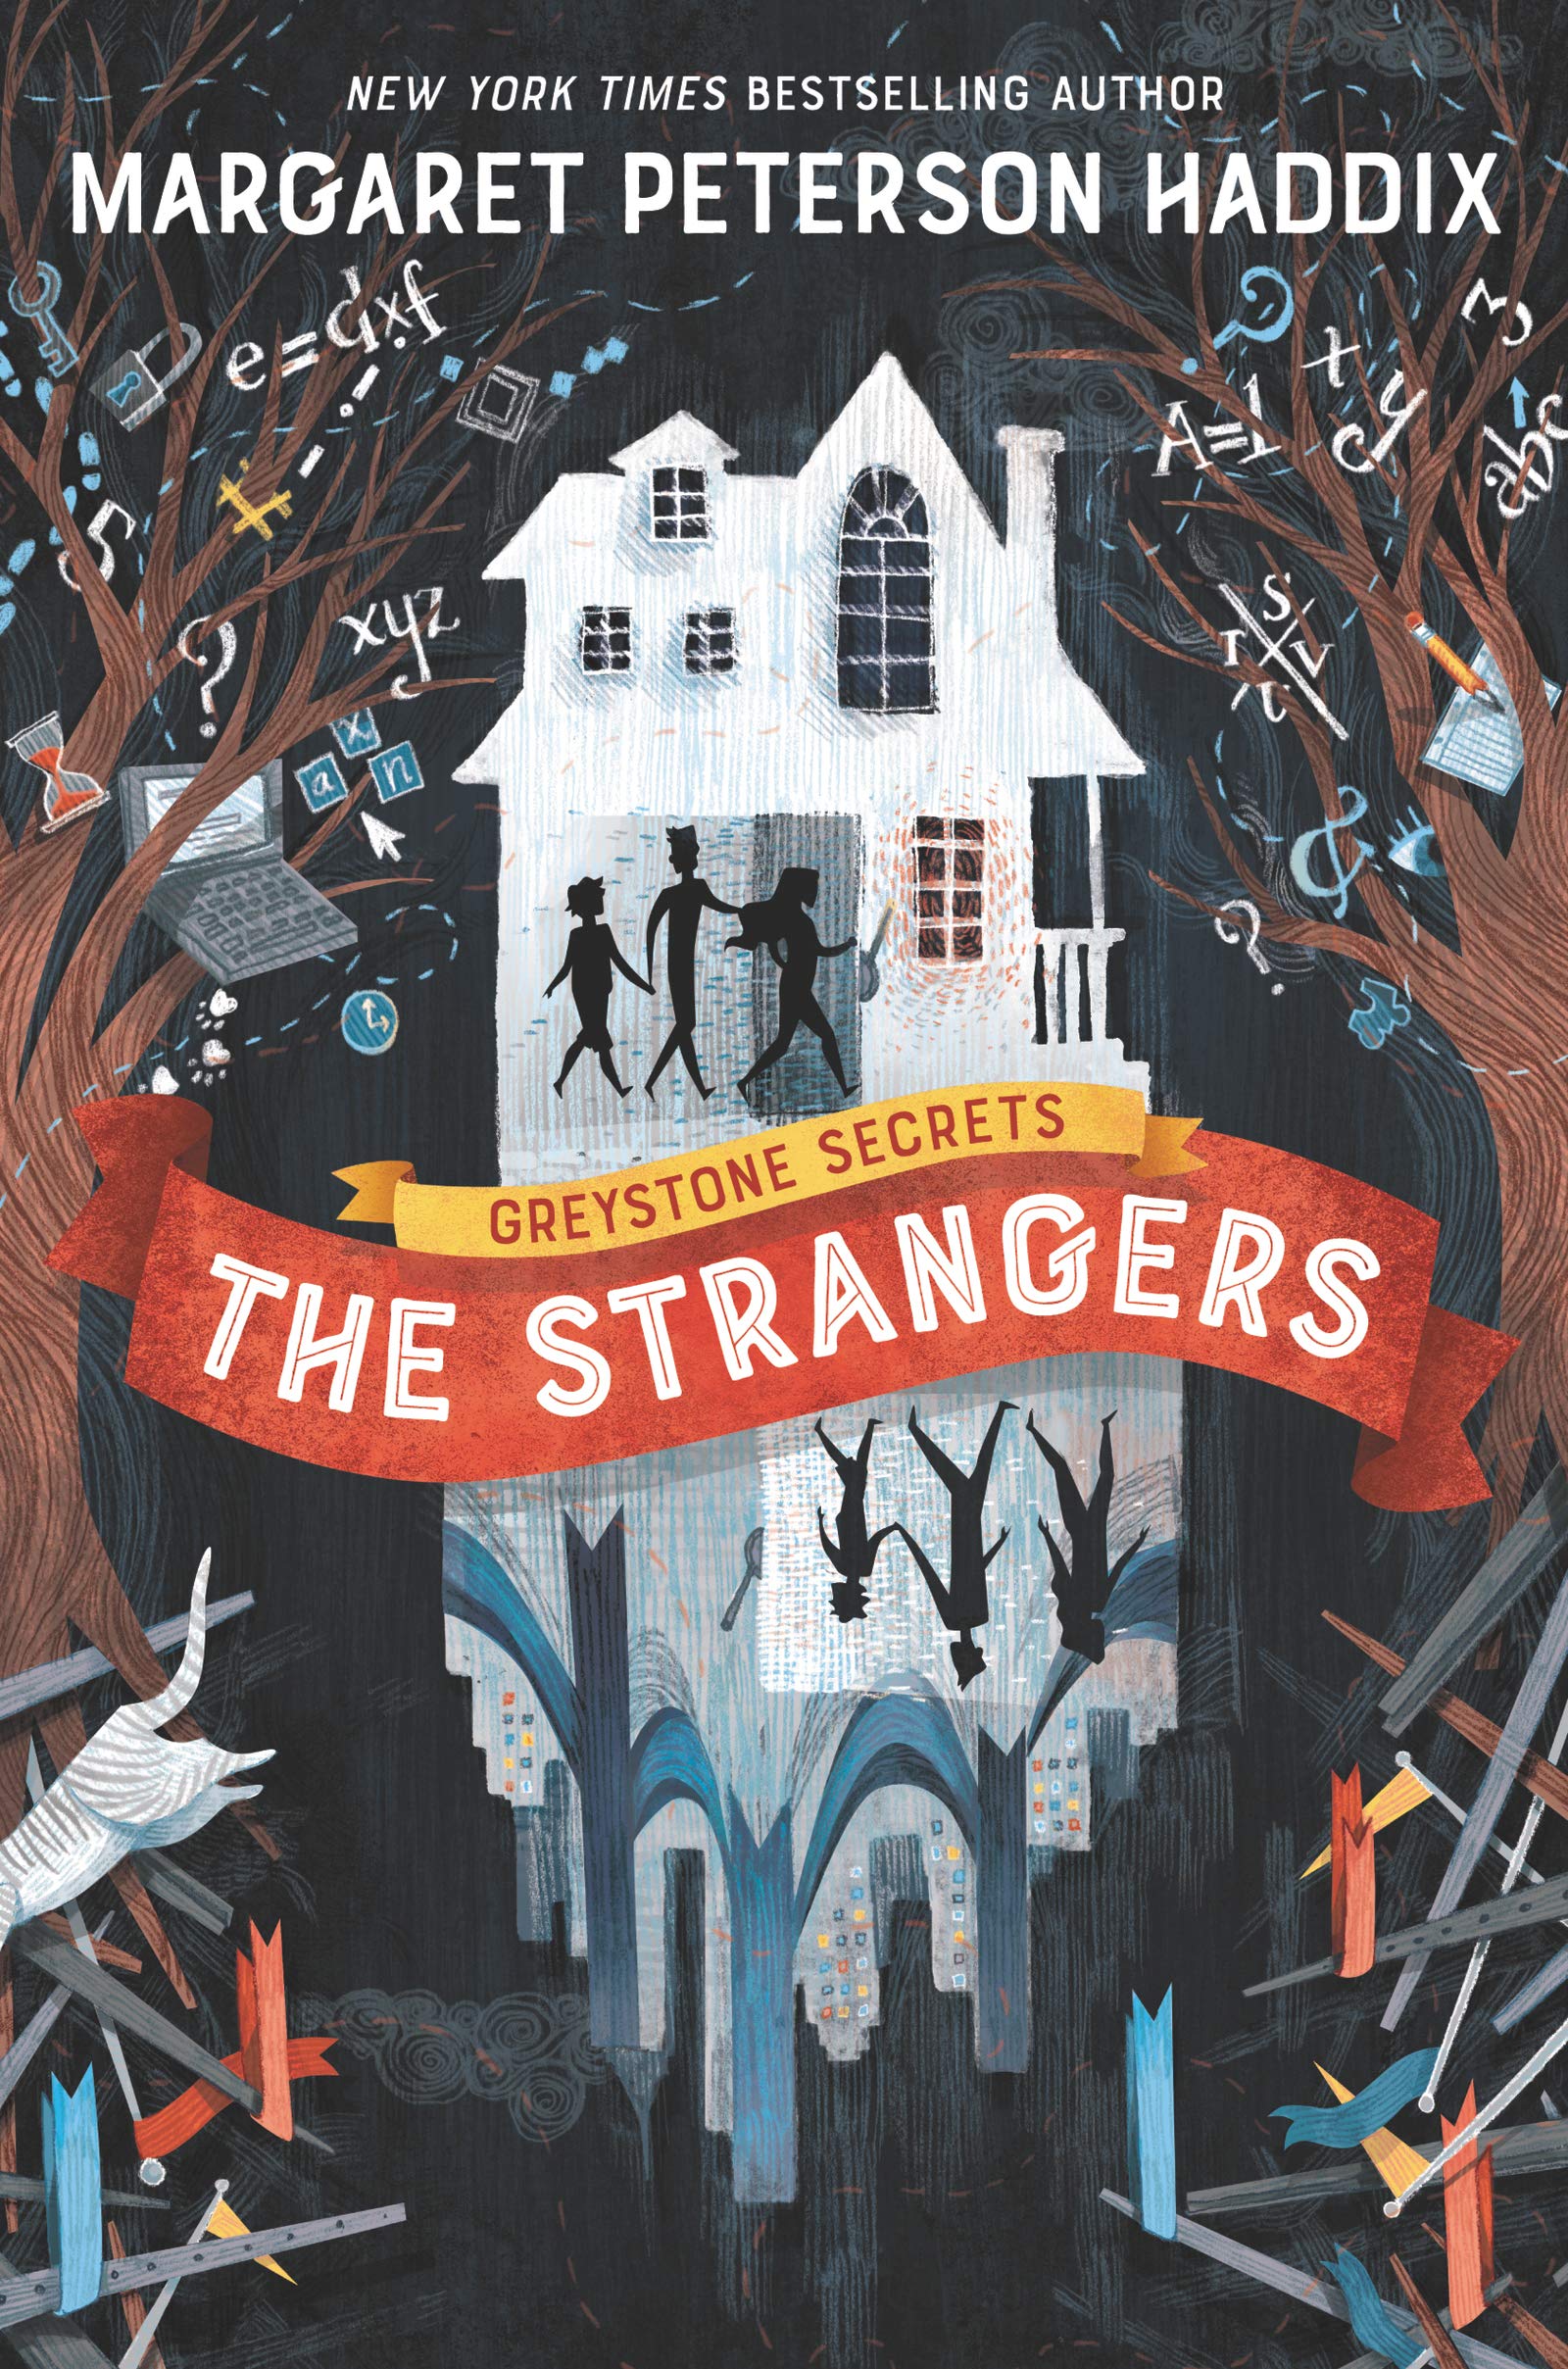 the strangers.jpg